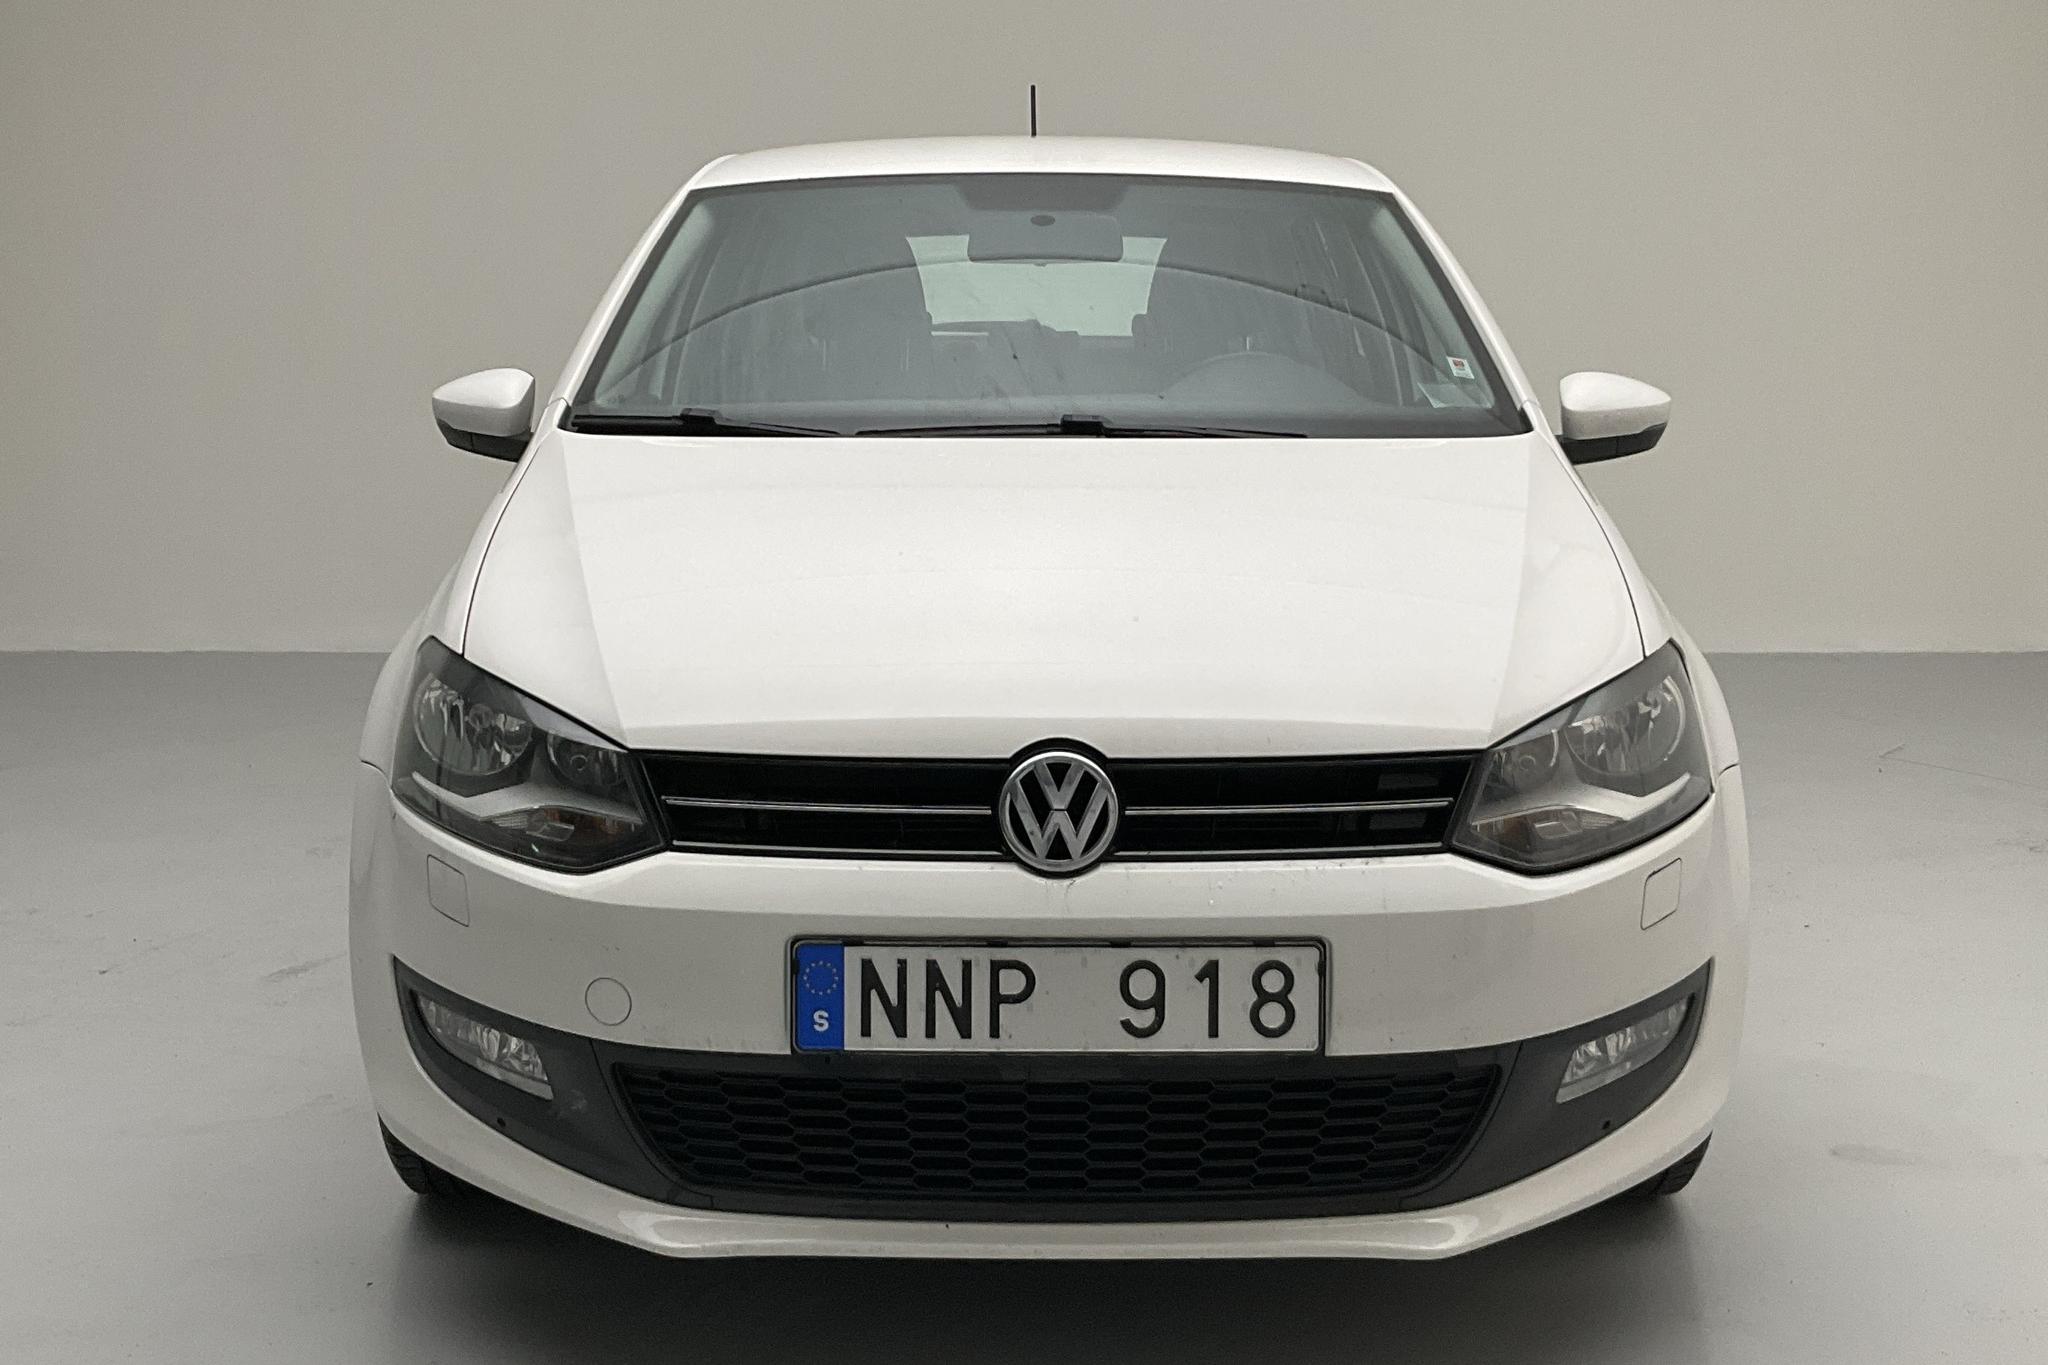 VW Polo 1.2 TSI 5dr (90hk) - 108 460 km - Manual - white - 2013